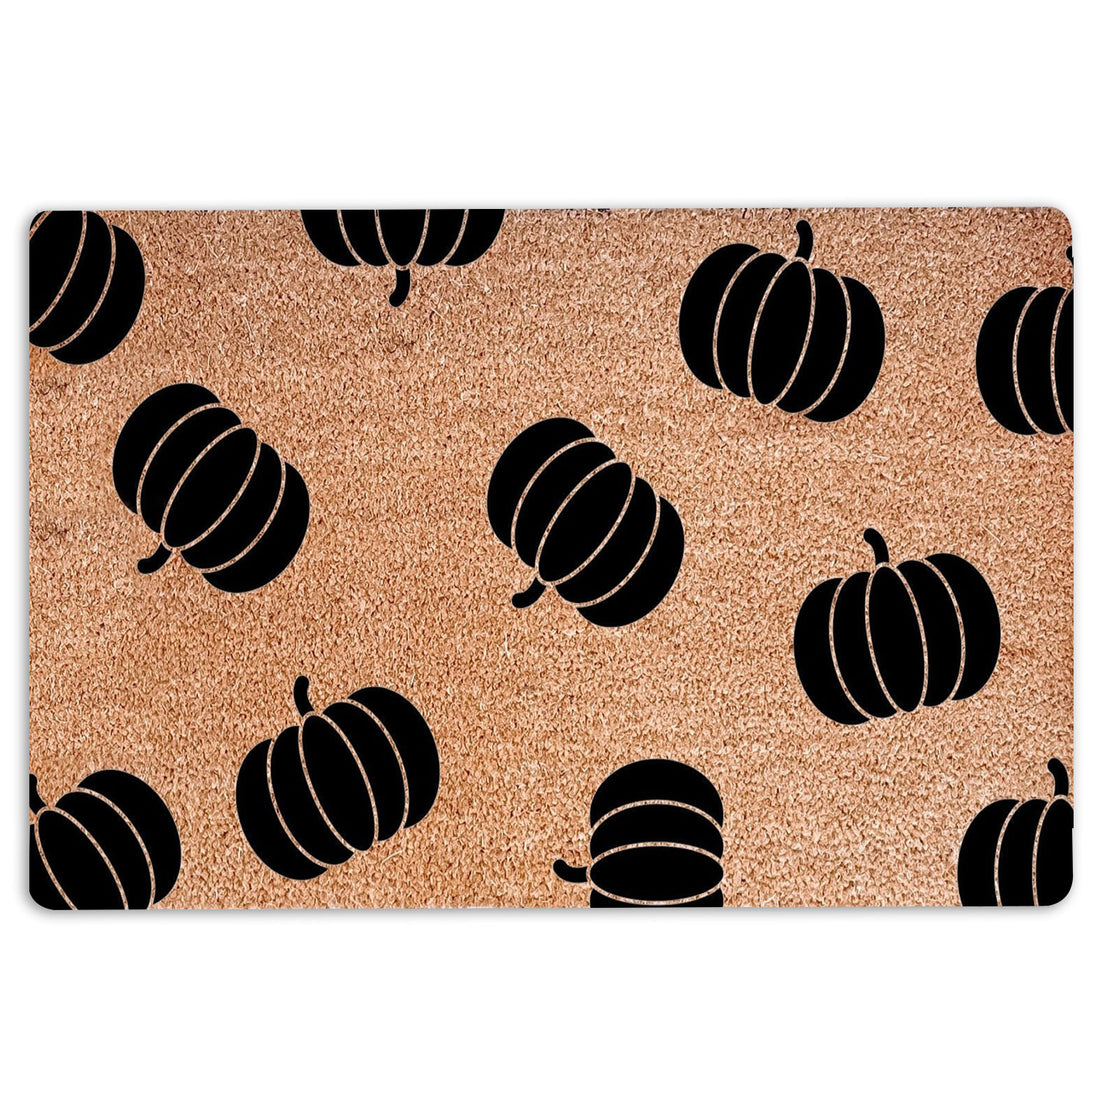 Ohaprints-Doormat-Outdoor-Indoor-Halloween-Pumpkin-Pattern-Rubber-Door-Mat-19-18'' x 30''